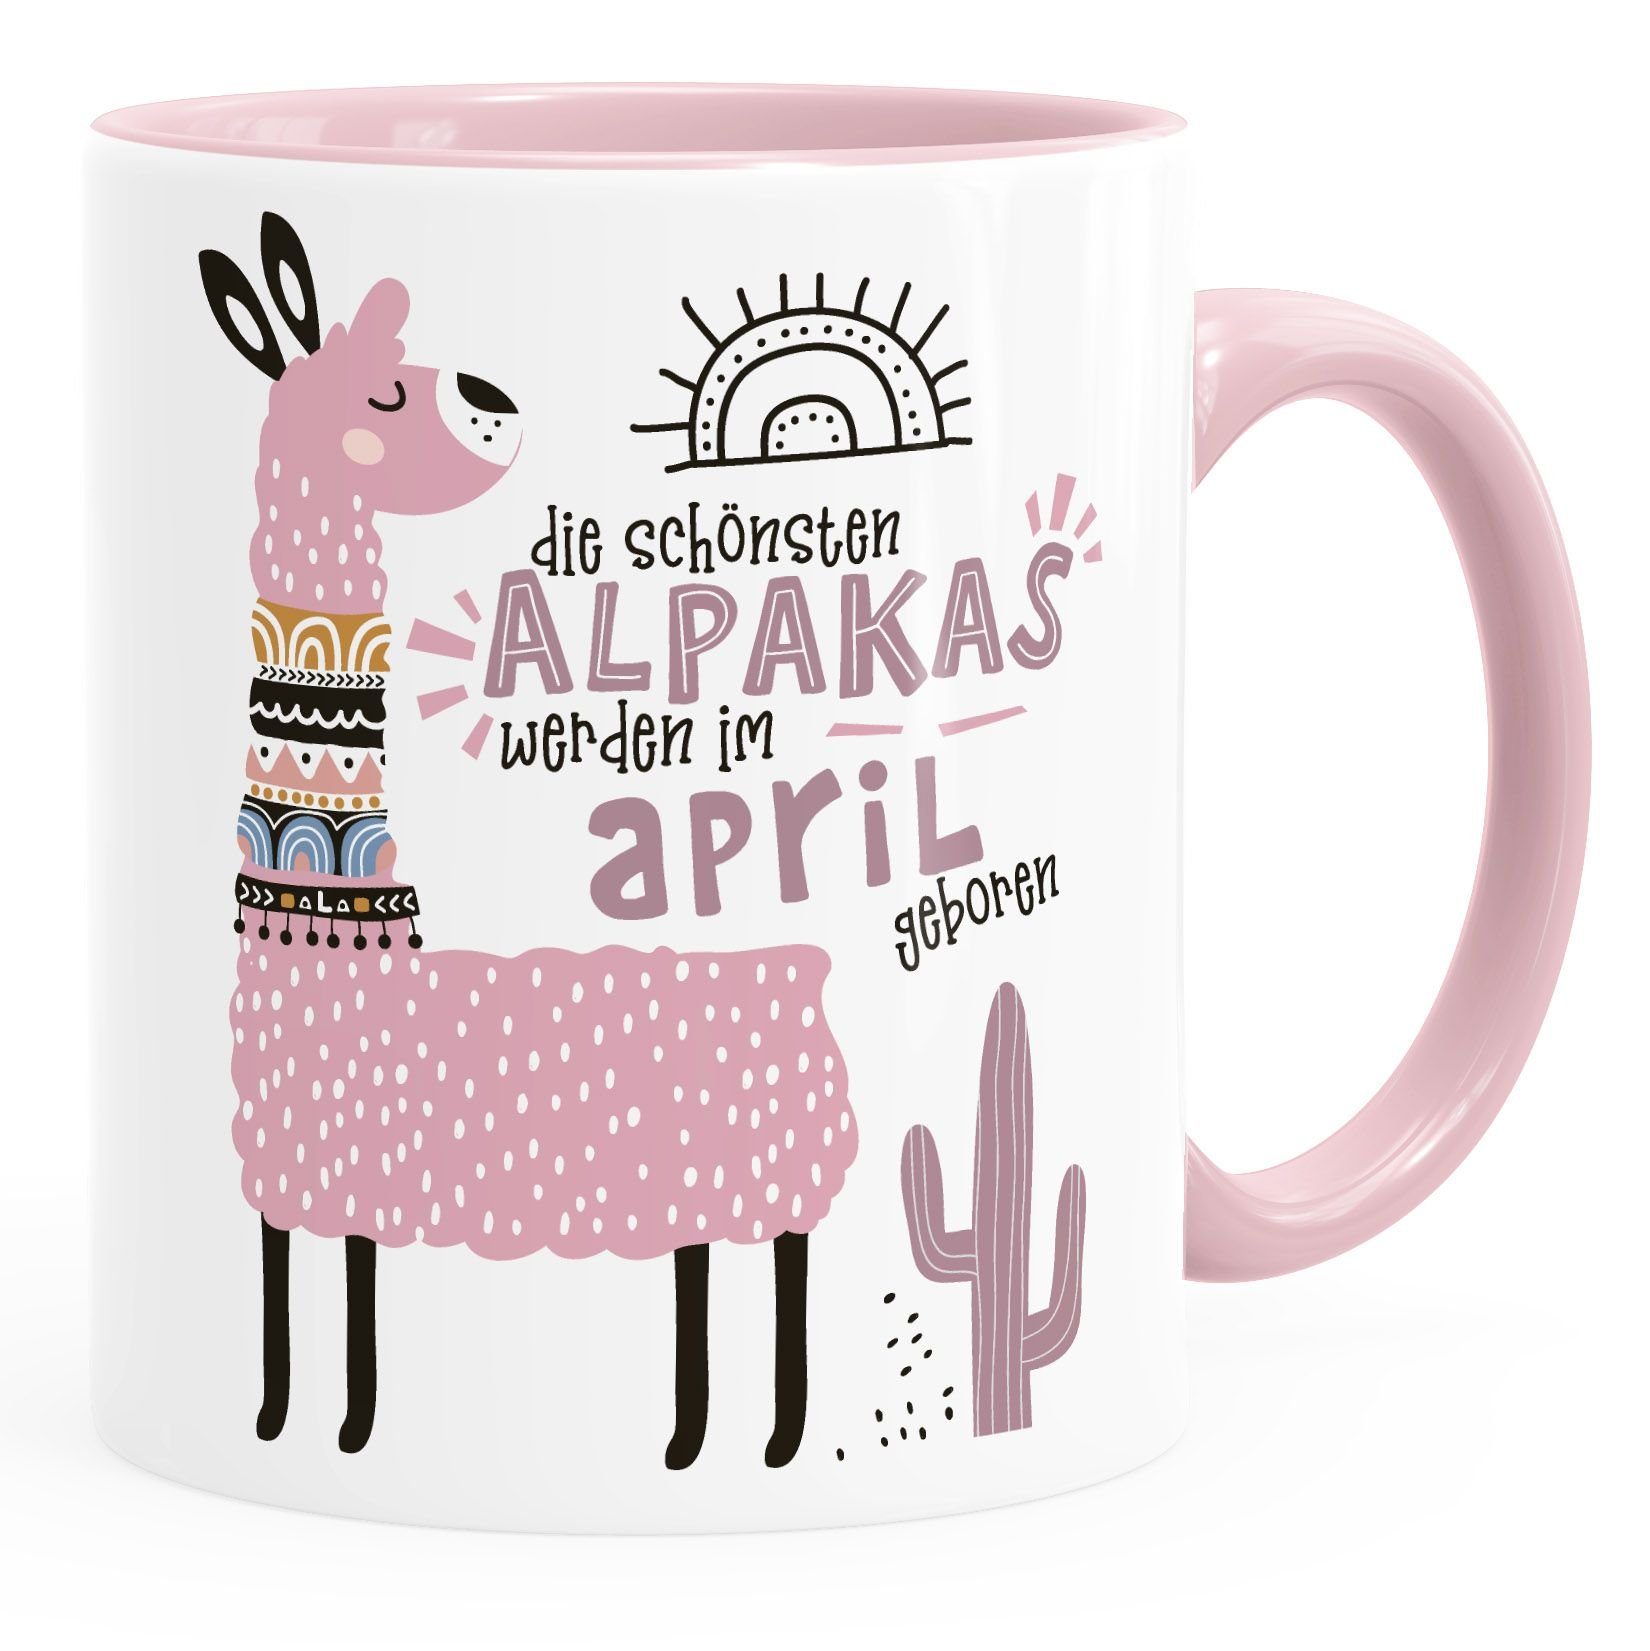 Tasse Januar-Dezember SpecialMe geboren April Keramik werden Kaffee-Tasse Schönsten rosa individuelle Motiv anpassbares Geburtags-Geschenke im Lama Rosa Alpakas SpecialMe®, Die Geburtsmonat